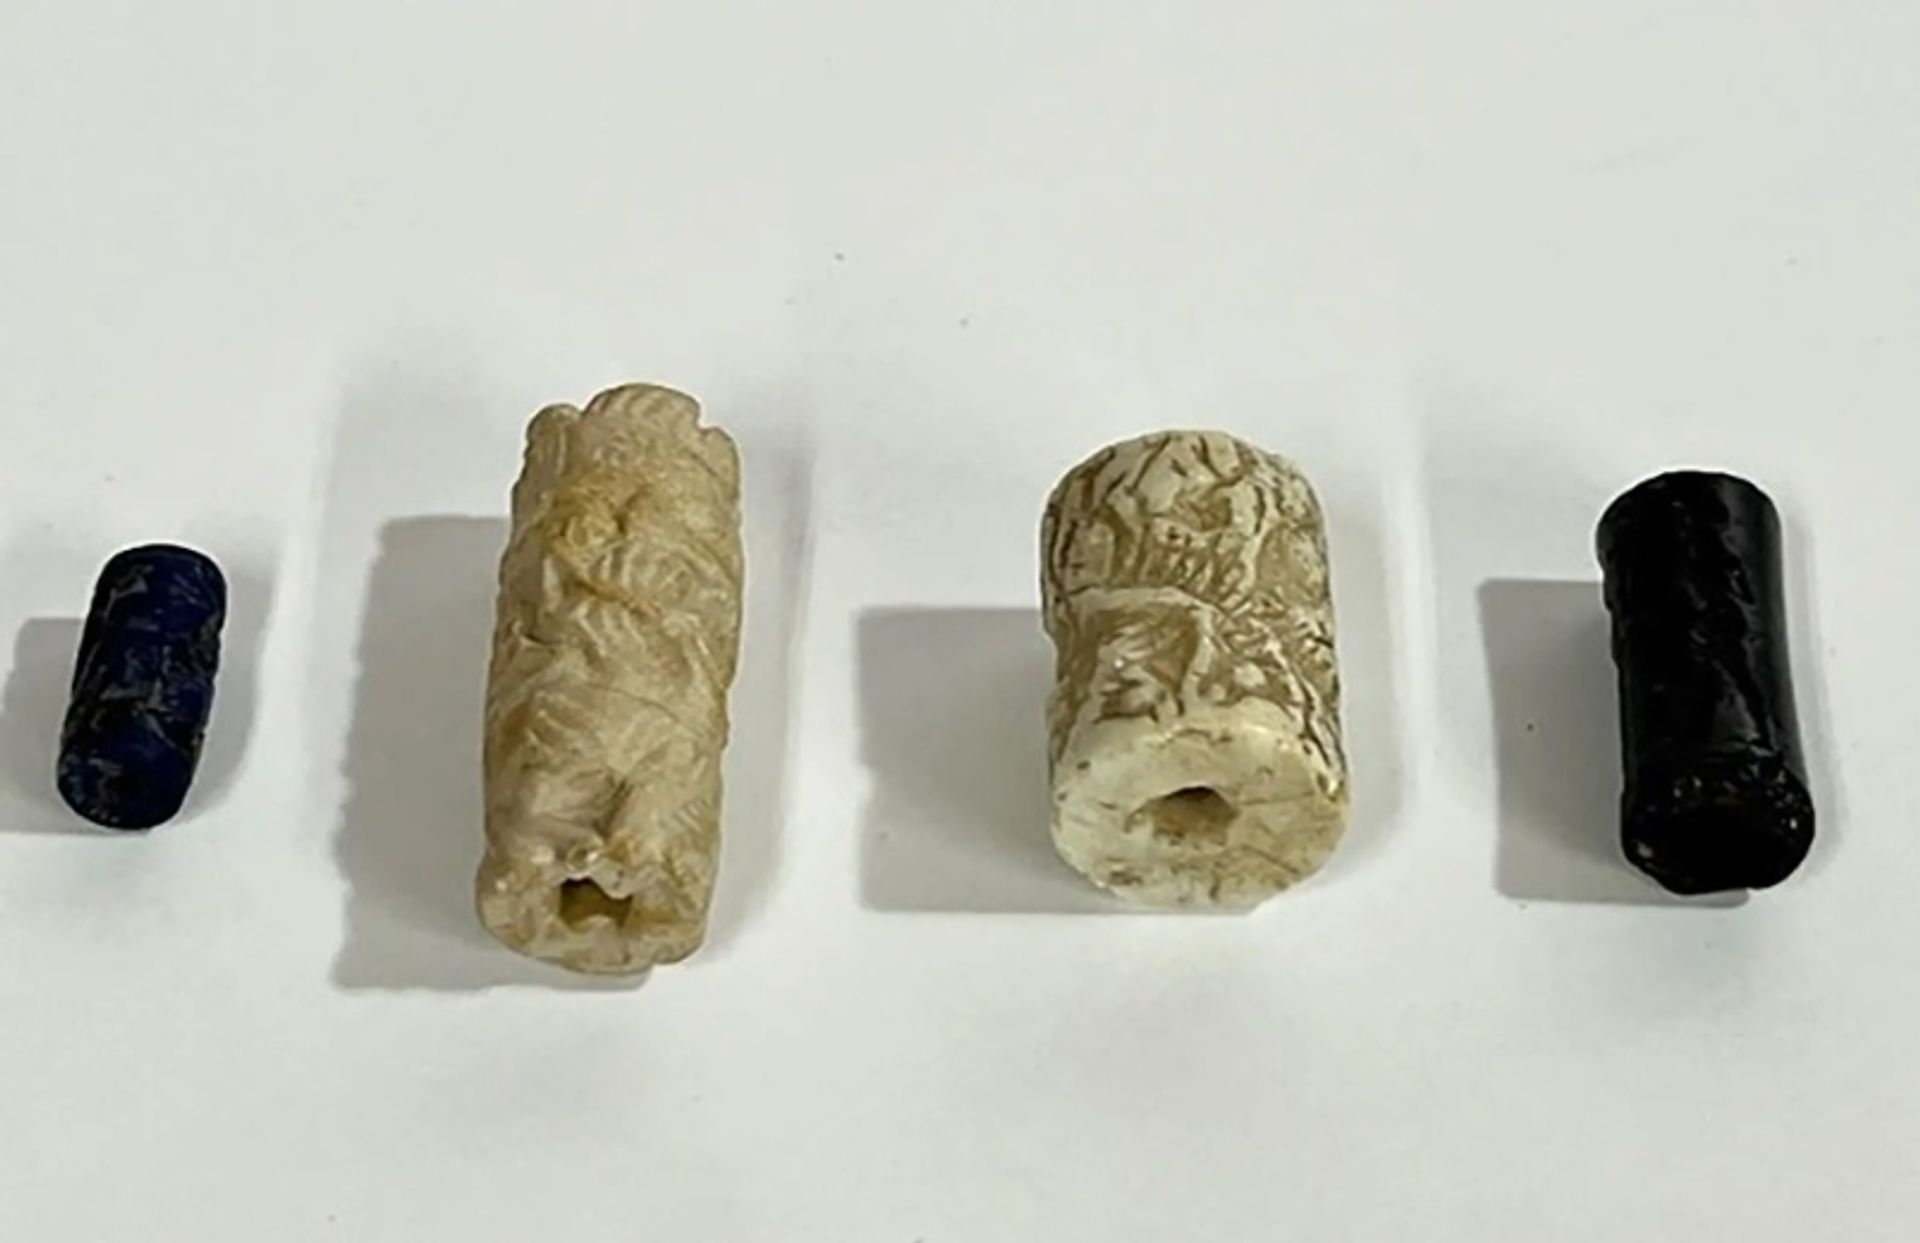 ארבעת חותמות הגליל שנבזזו ממוזיאון עיראק ב-2003 והוחזרו

באדיבות משרדו של התובע המחוזי במנהטן, אלווין ל. בראג, ג'וניור